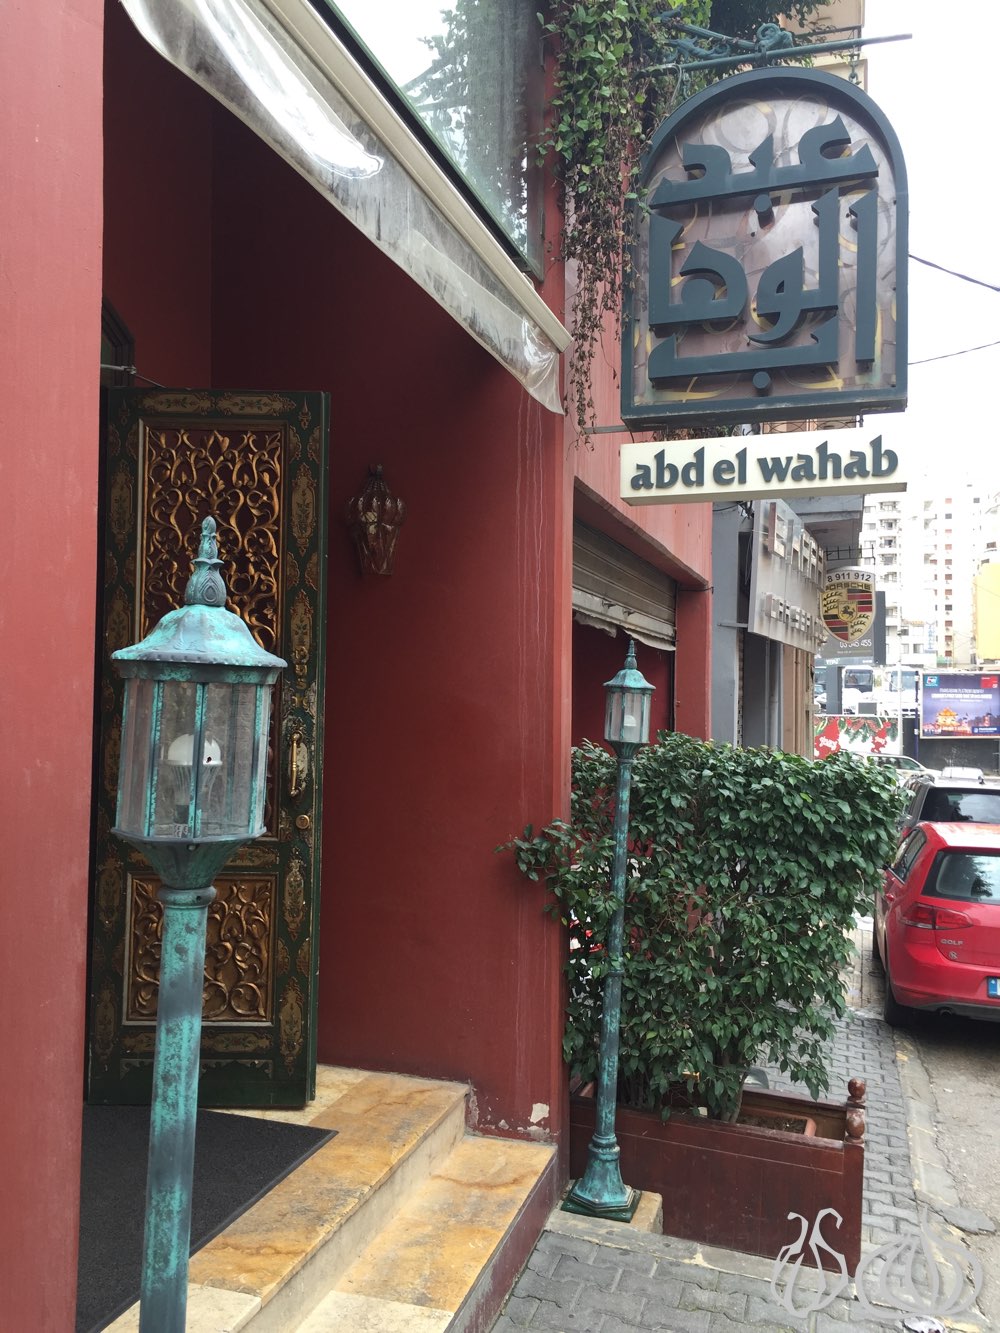 abdelwahab-lebanese-restaurant-beirut12015-02-18-12-26-54